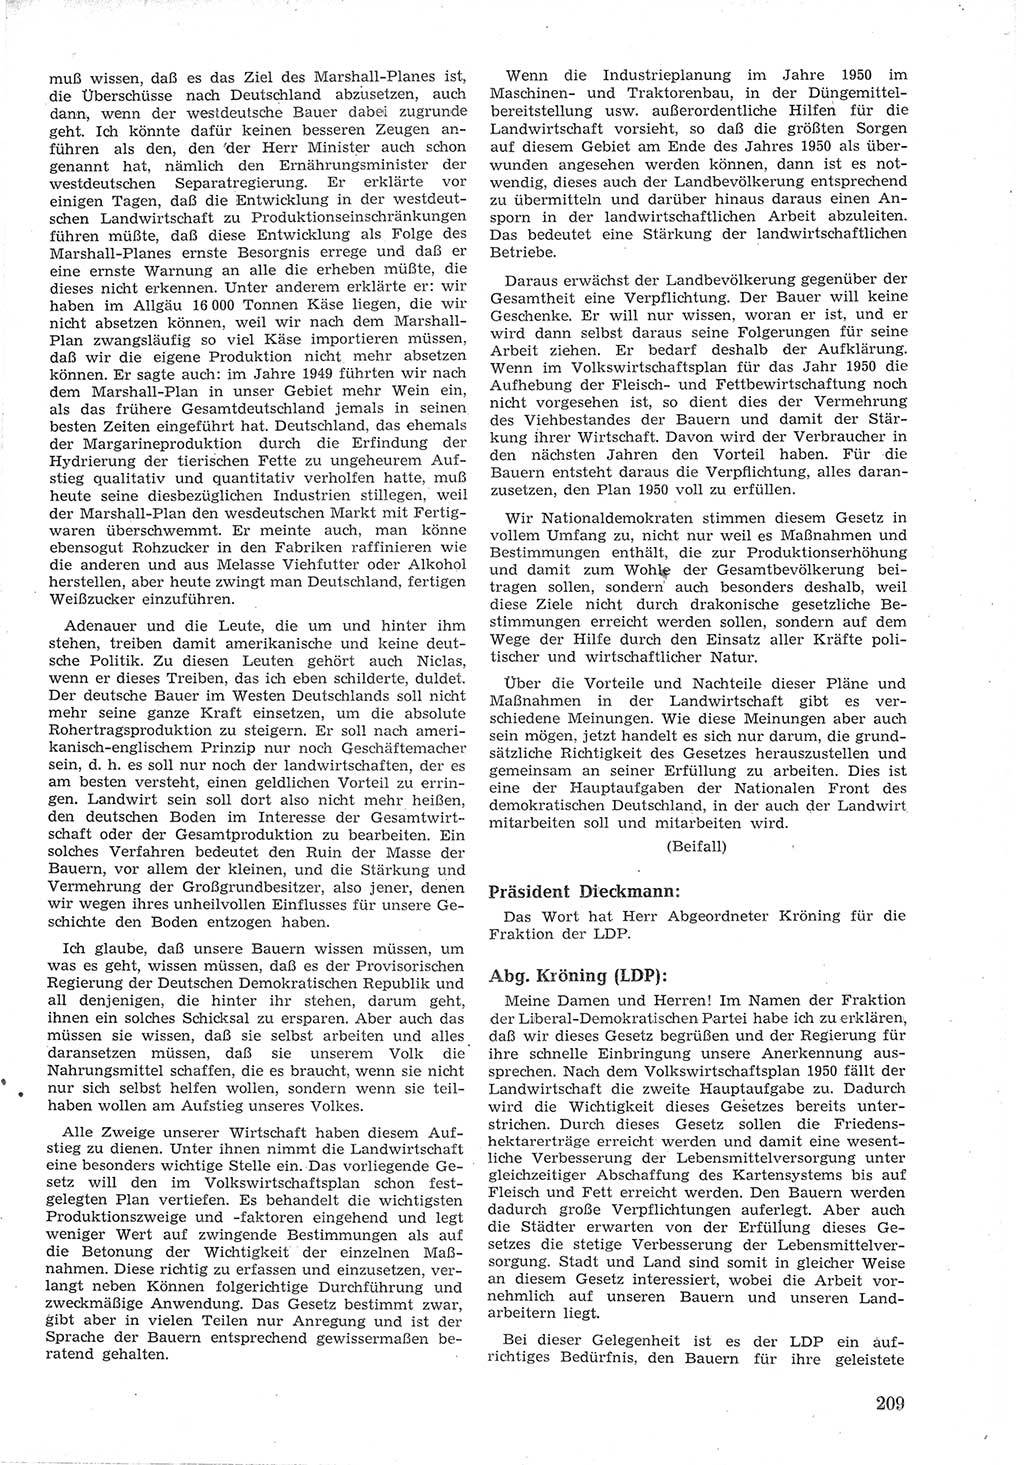 Provisorische Volkskammer (VK) der Deutschen Demokratischen Republik (DDR) 1949-1950, Dokument 221 (Prov. VK DDR 1949-1950, Dok. 221)